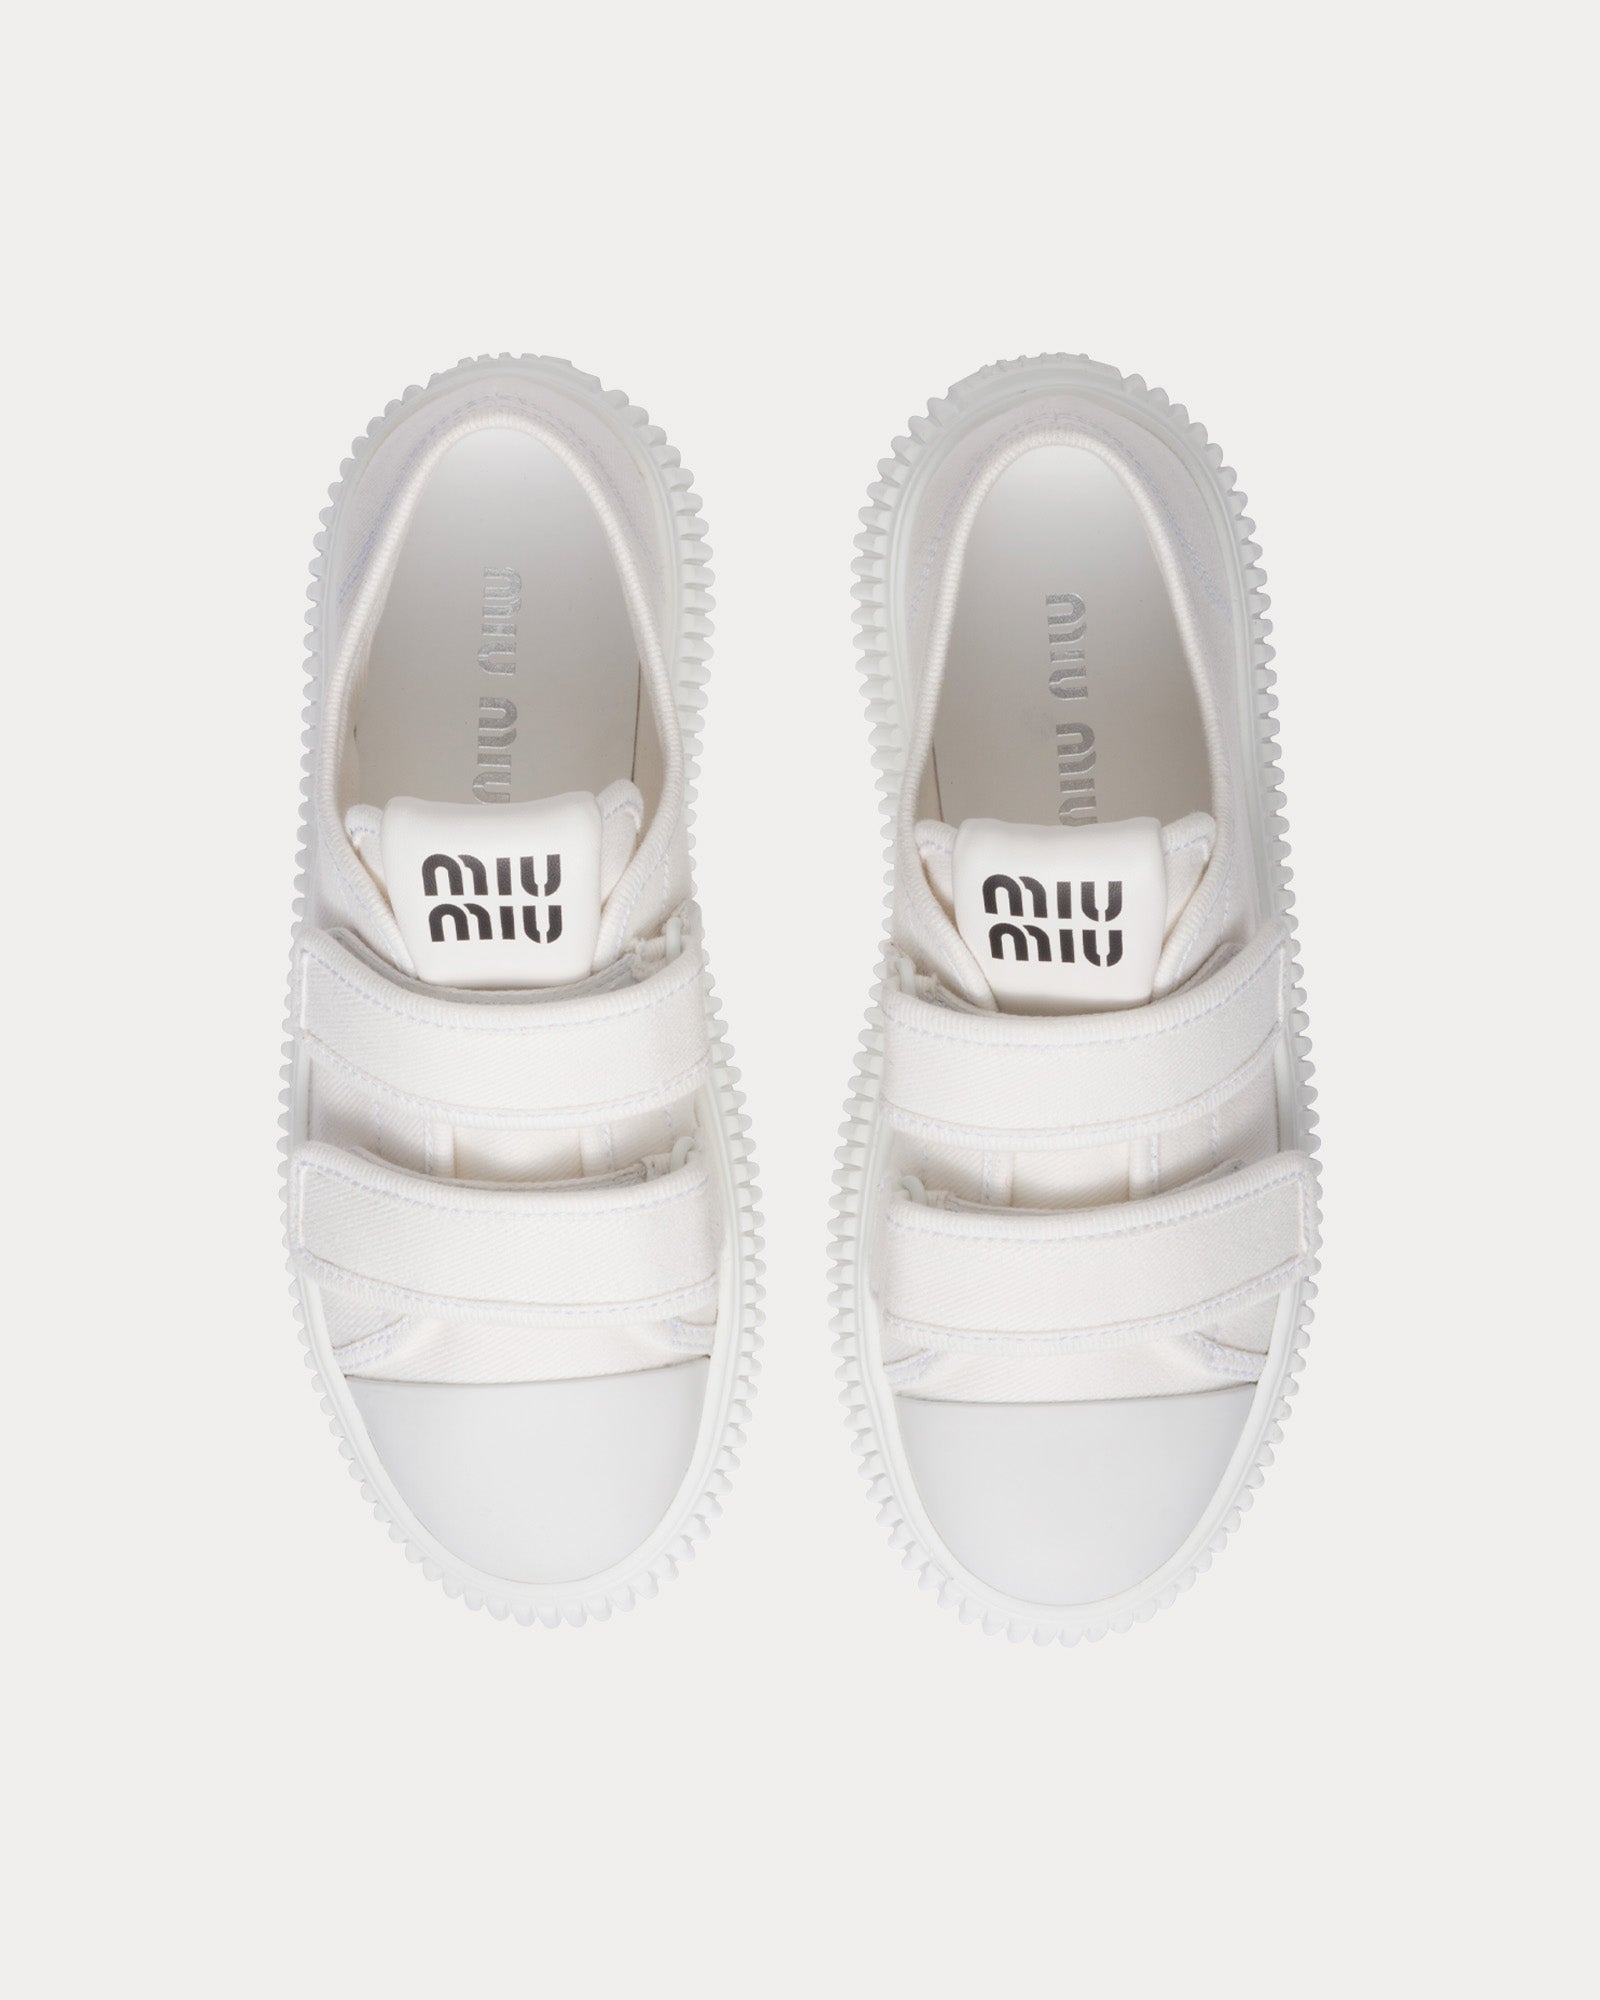 Miu Miu - Strap Denim White Low Top Sneakers